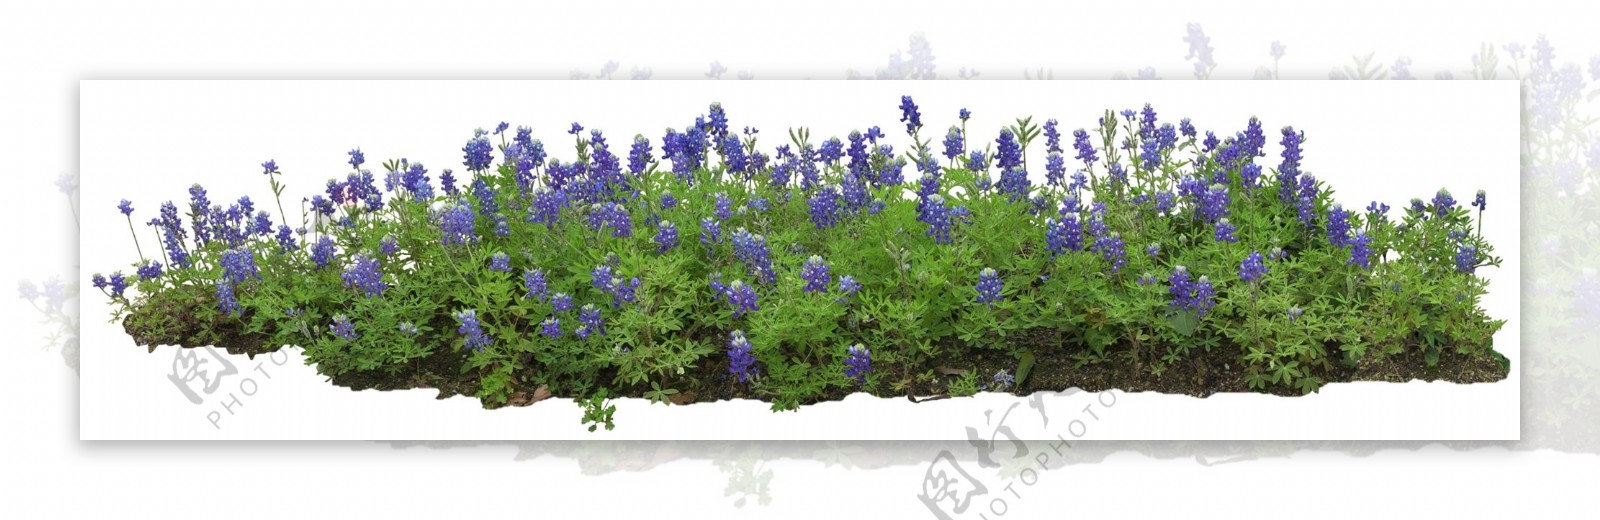 紫花绿草园艺设计效果图后期素材